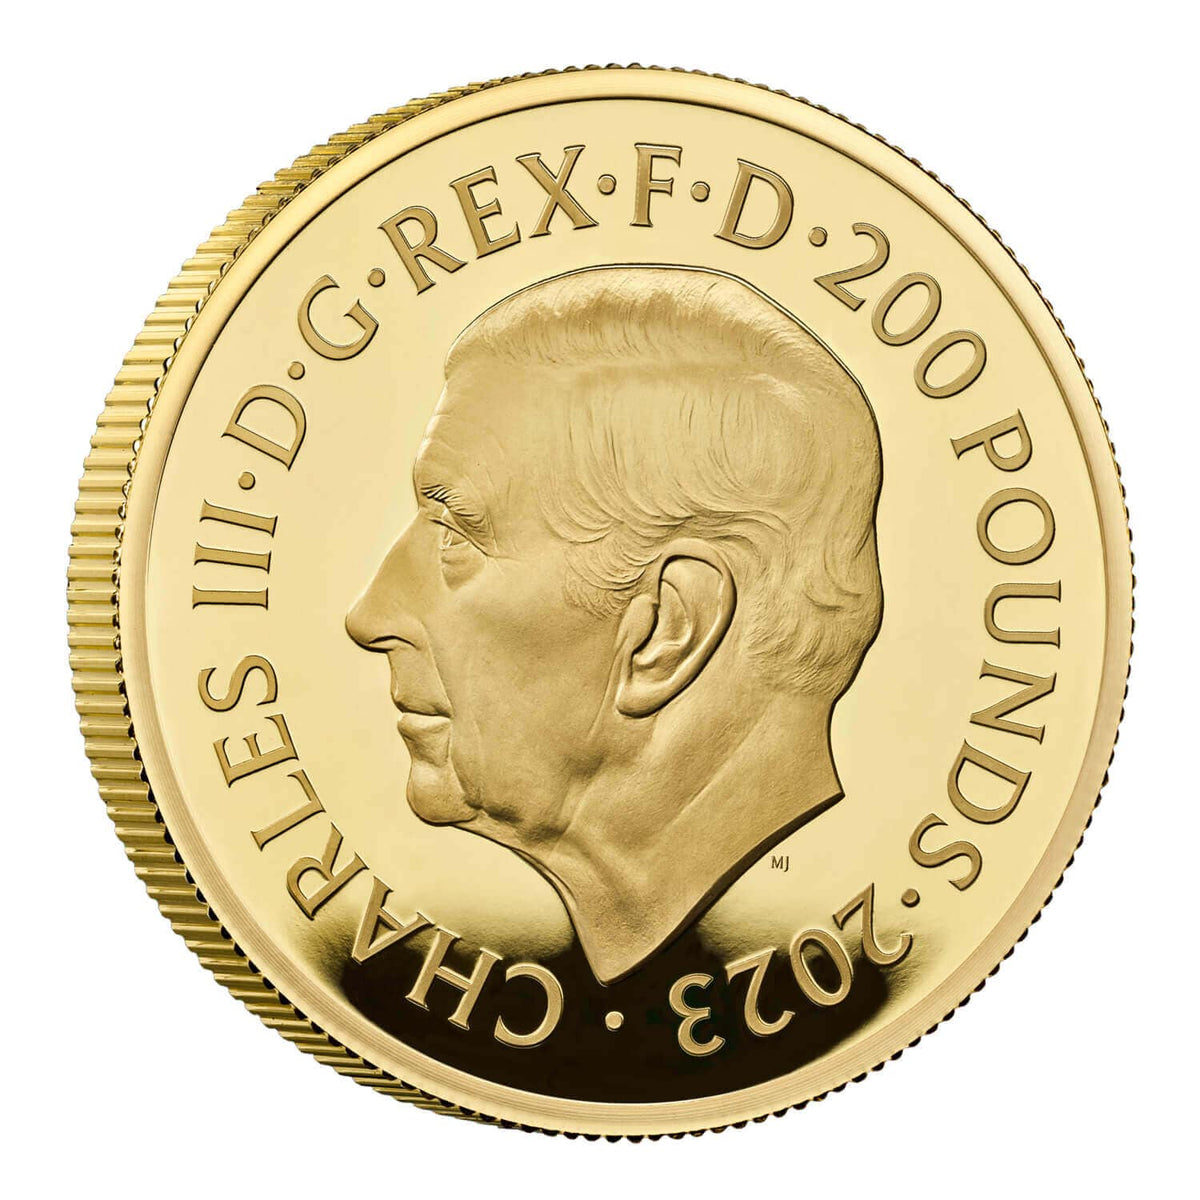 2023 イギリス ブリタニア 2オンス プルーフ金貨【限定125枚】 | アンティークコインギャラリア